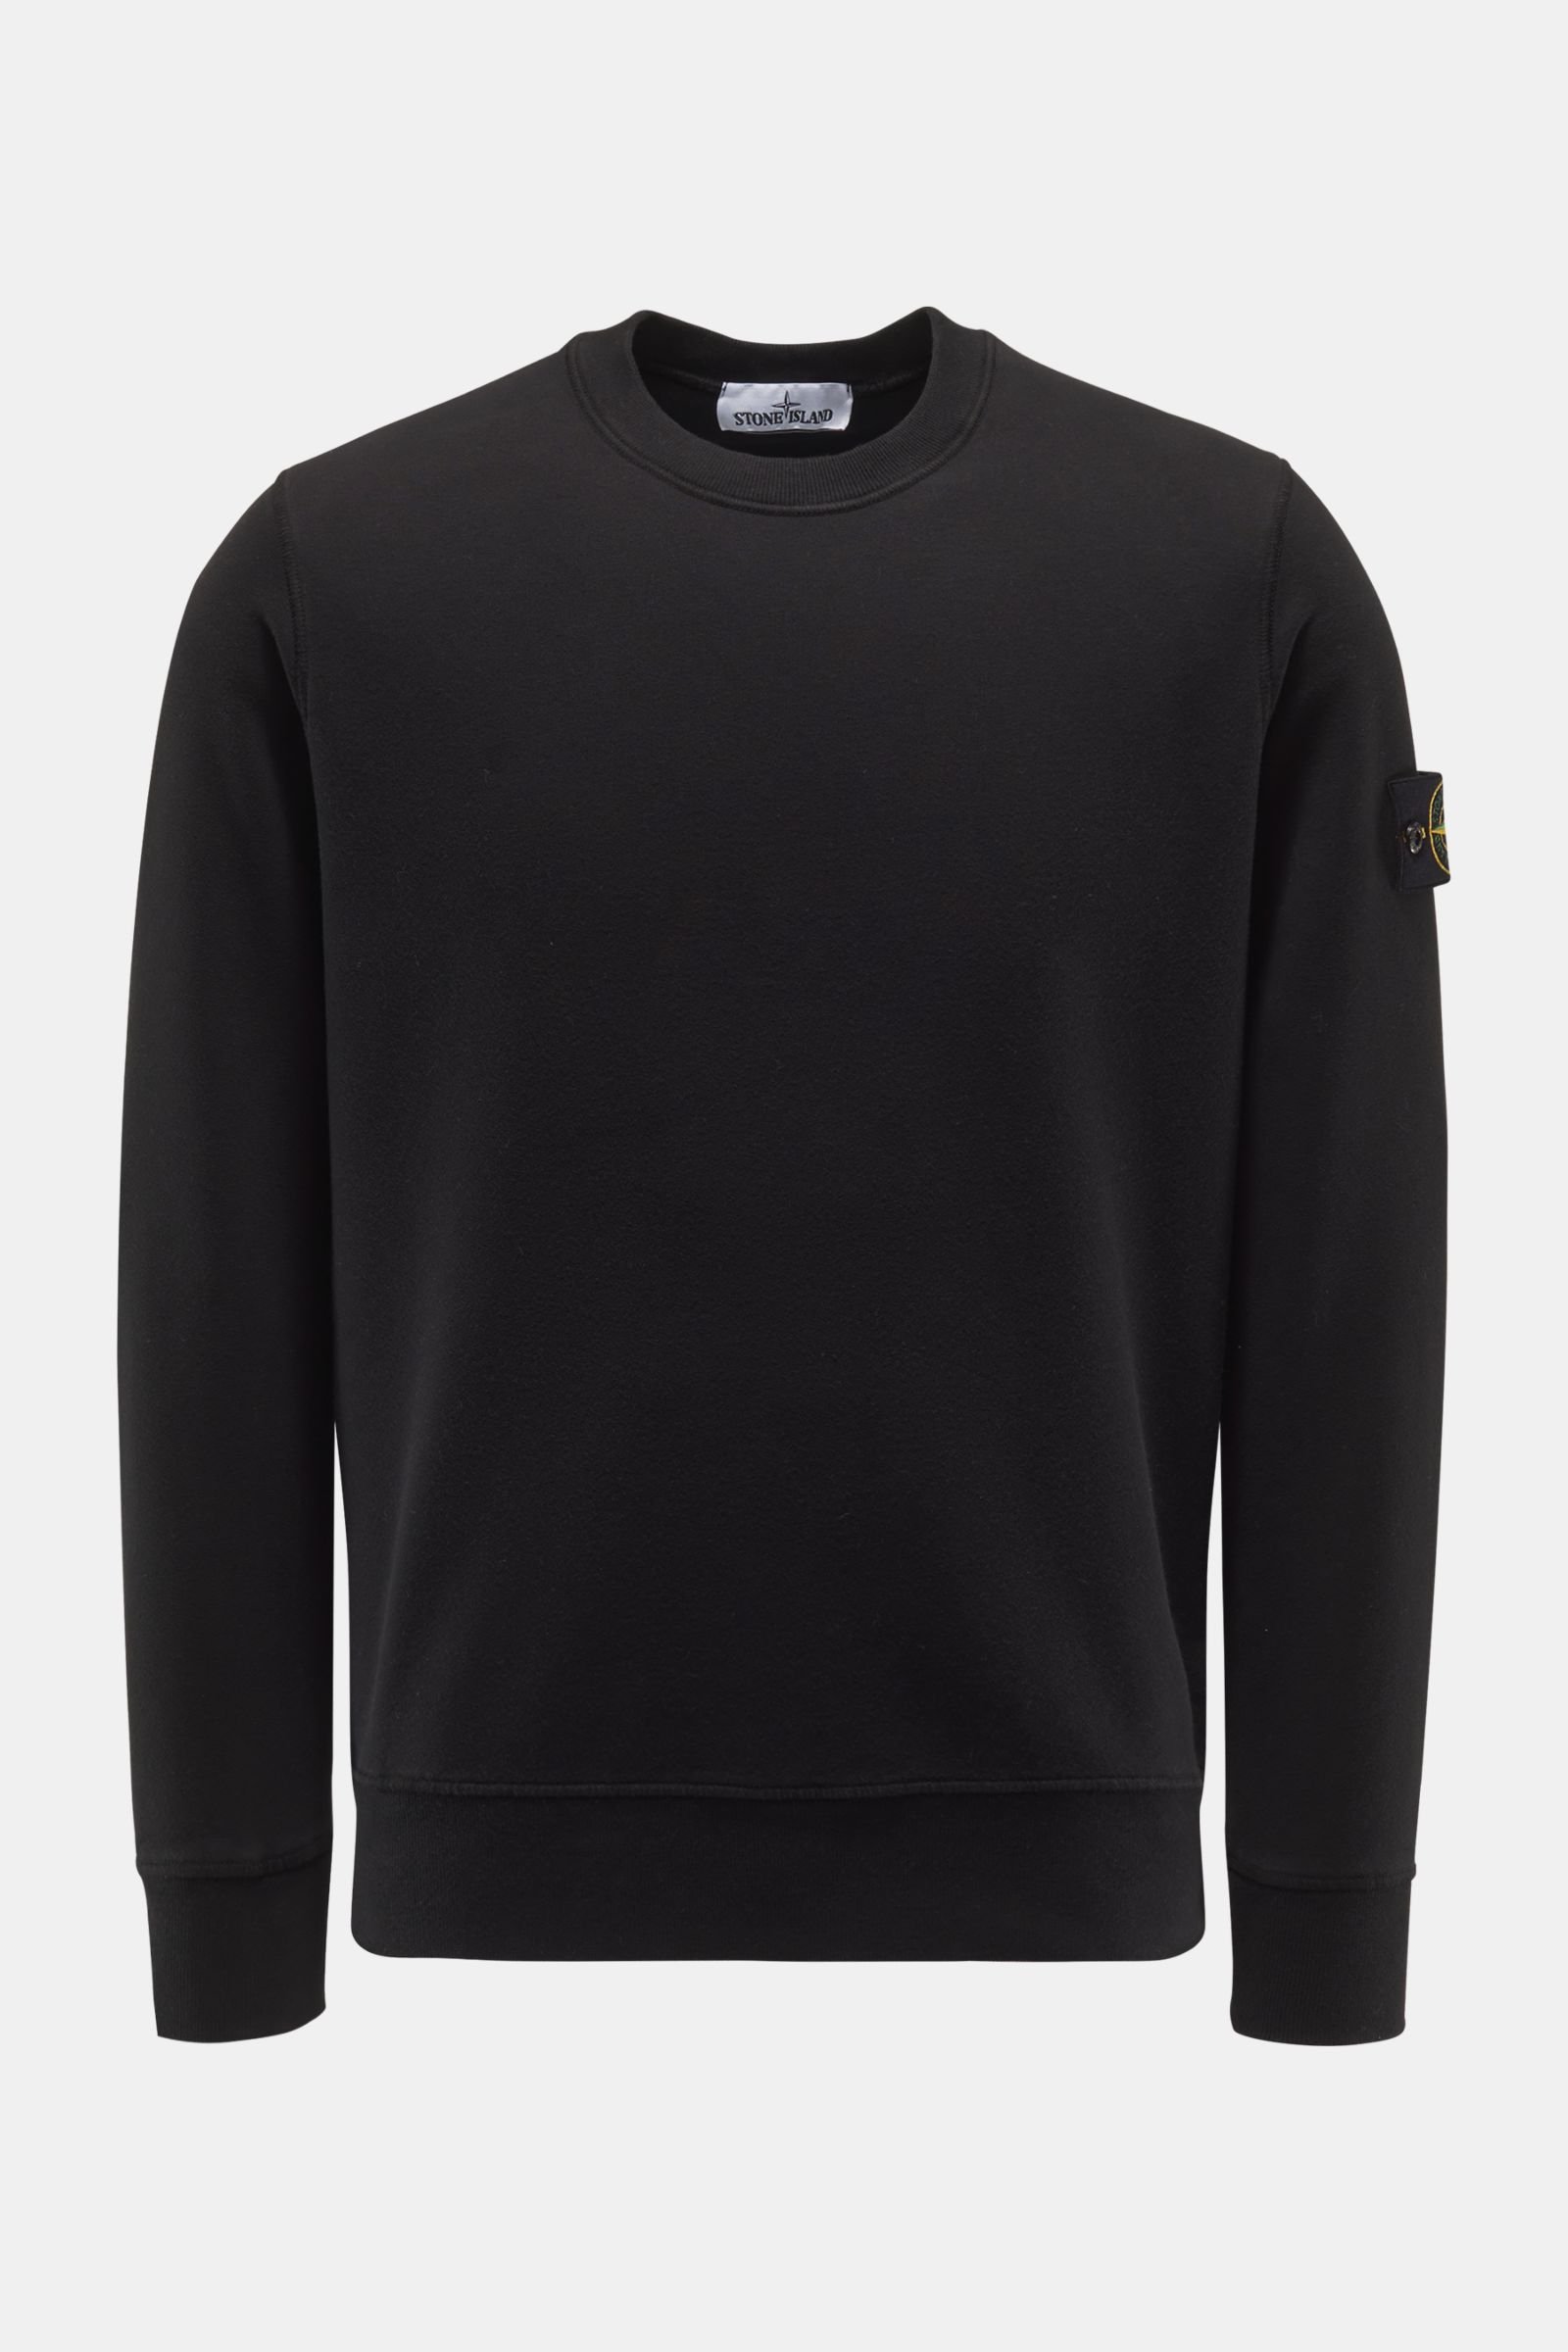 Rundhals-Sweatshirt schwarz